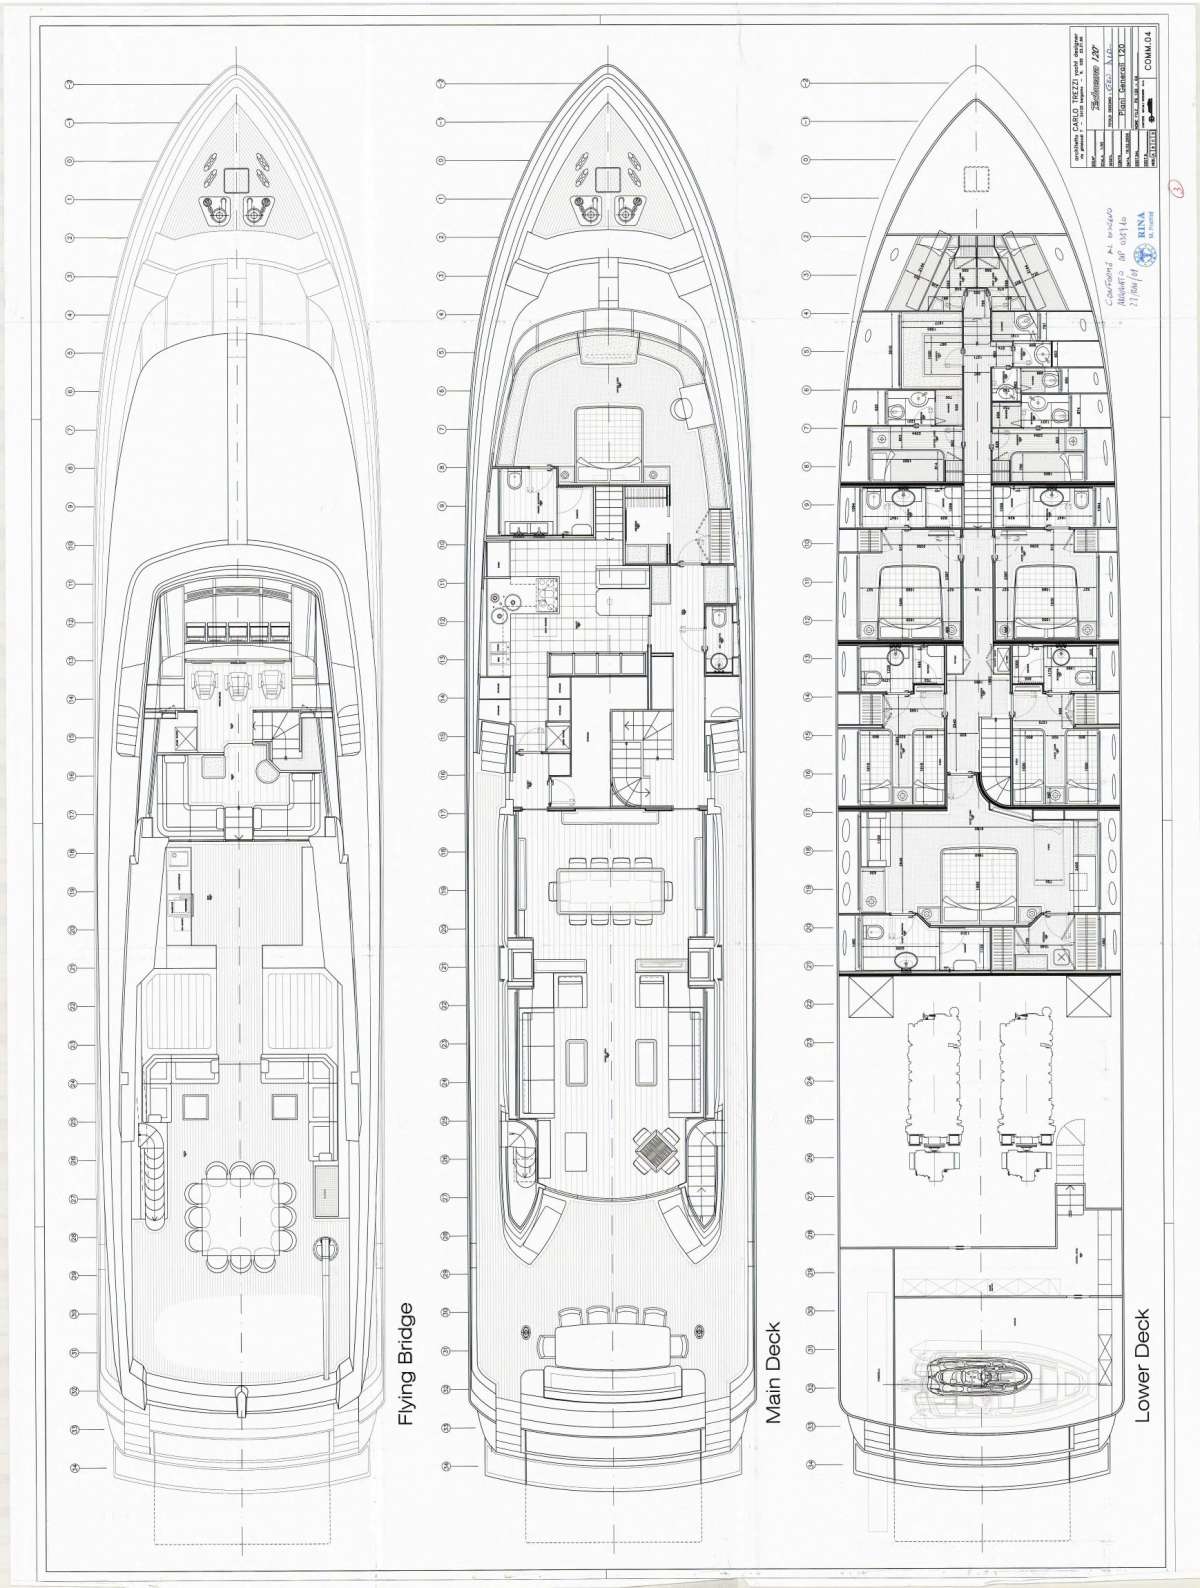 RINI V - Boat Interior Layout